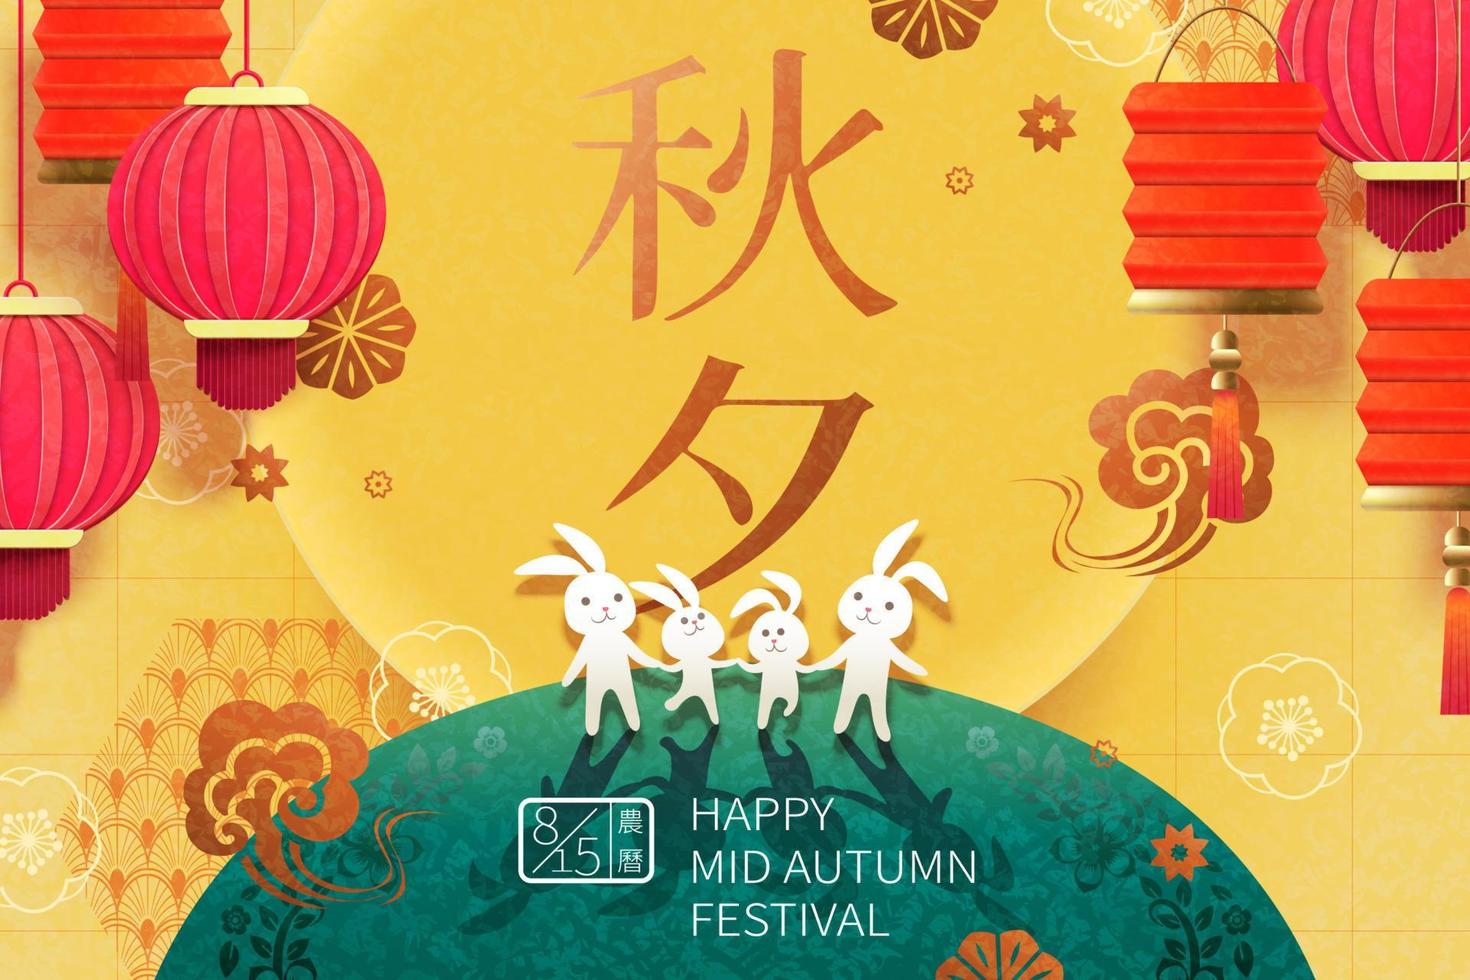 coelhos adoráveis de mãos dadas sob a lua cheia gigante em fundo amarelo, festival do meio do outono e mês lunar escritos em palavras chinesas vetor